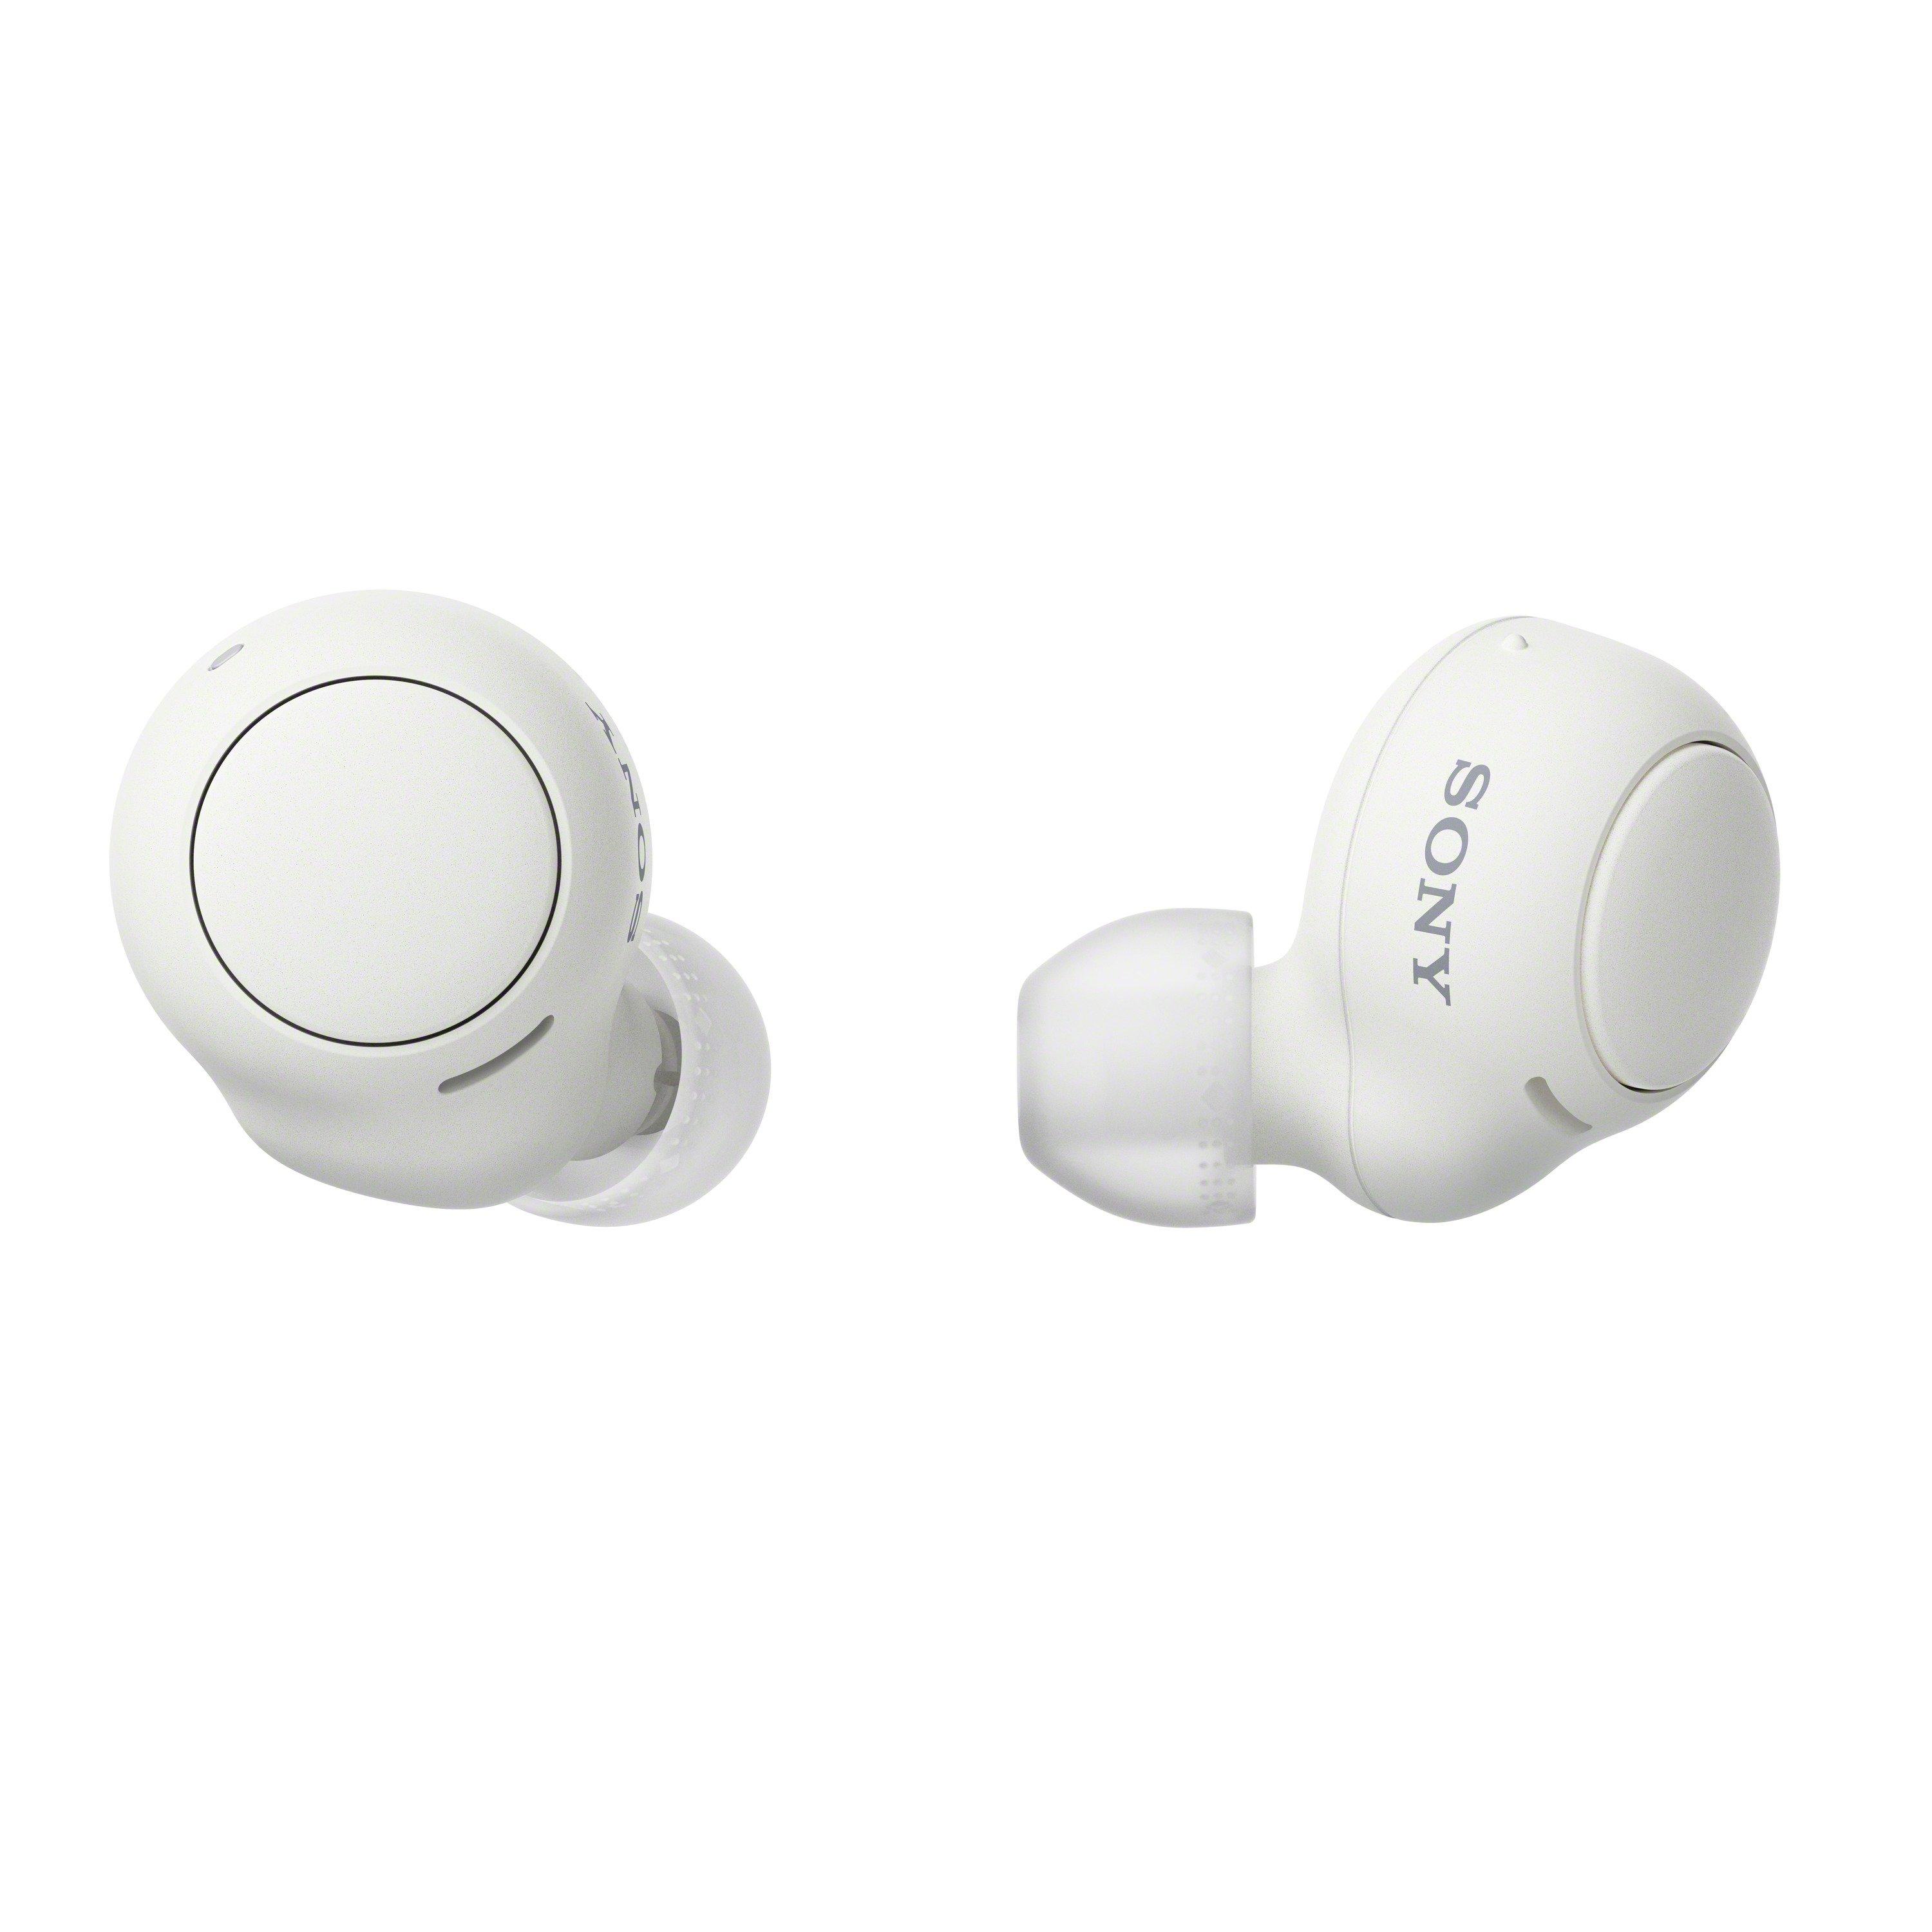 SONY  WF-C500 Bluetooth In-Ear-Kopfhörer Weiss 